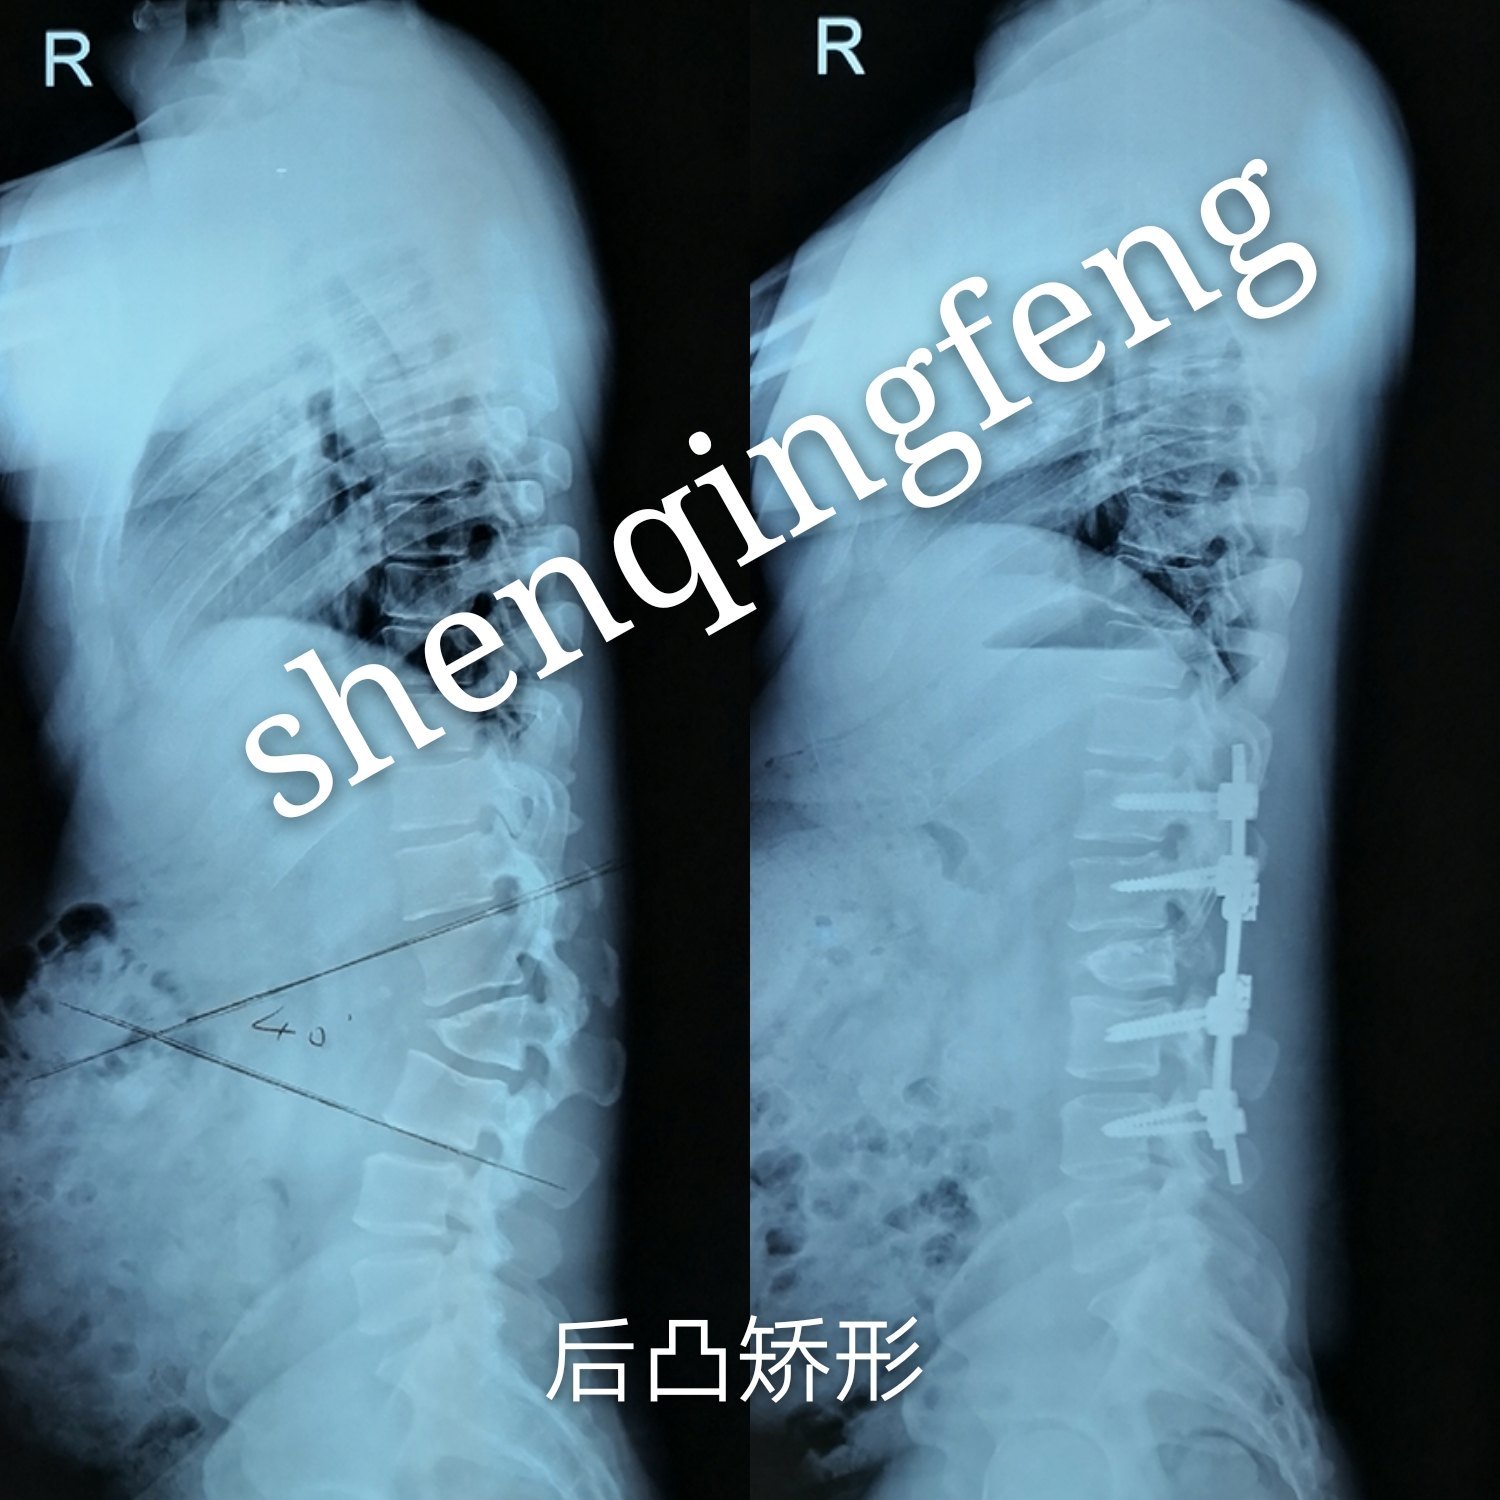 完成一例青年脊柱后凸畸形(罗锅)的矫形手术